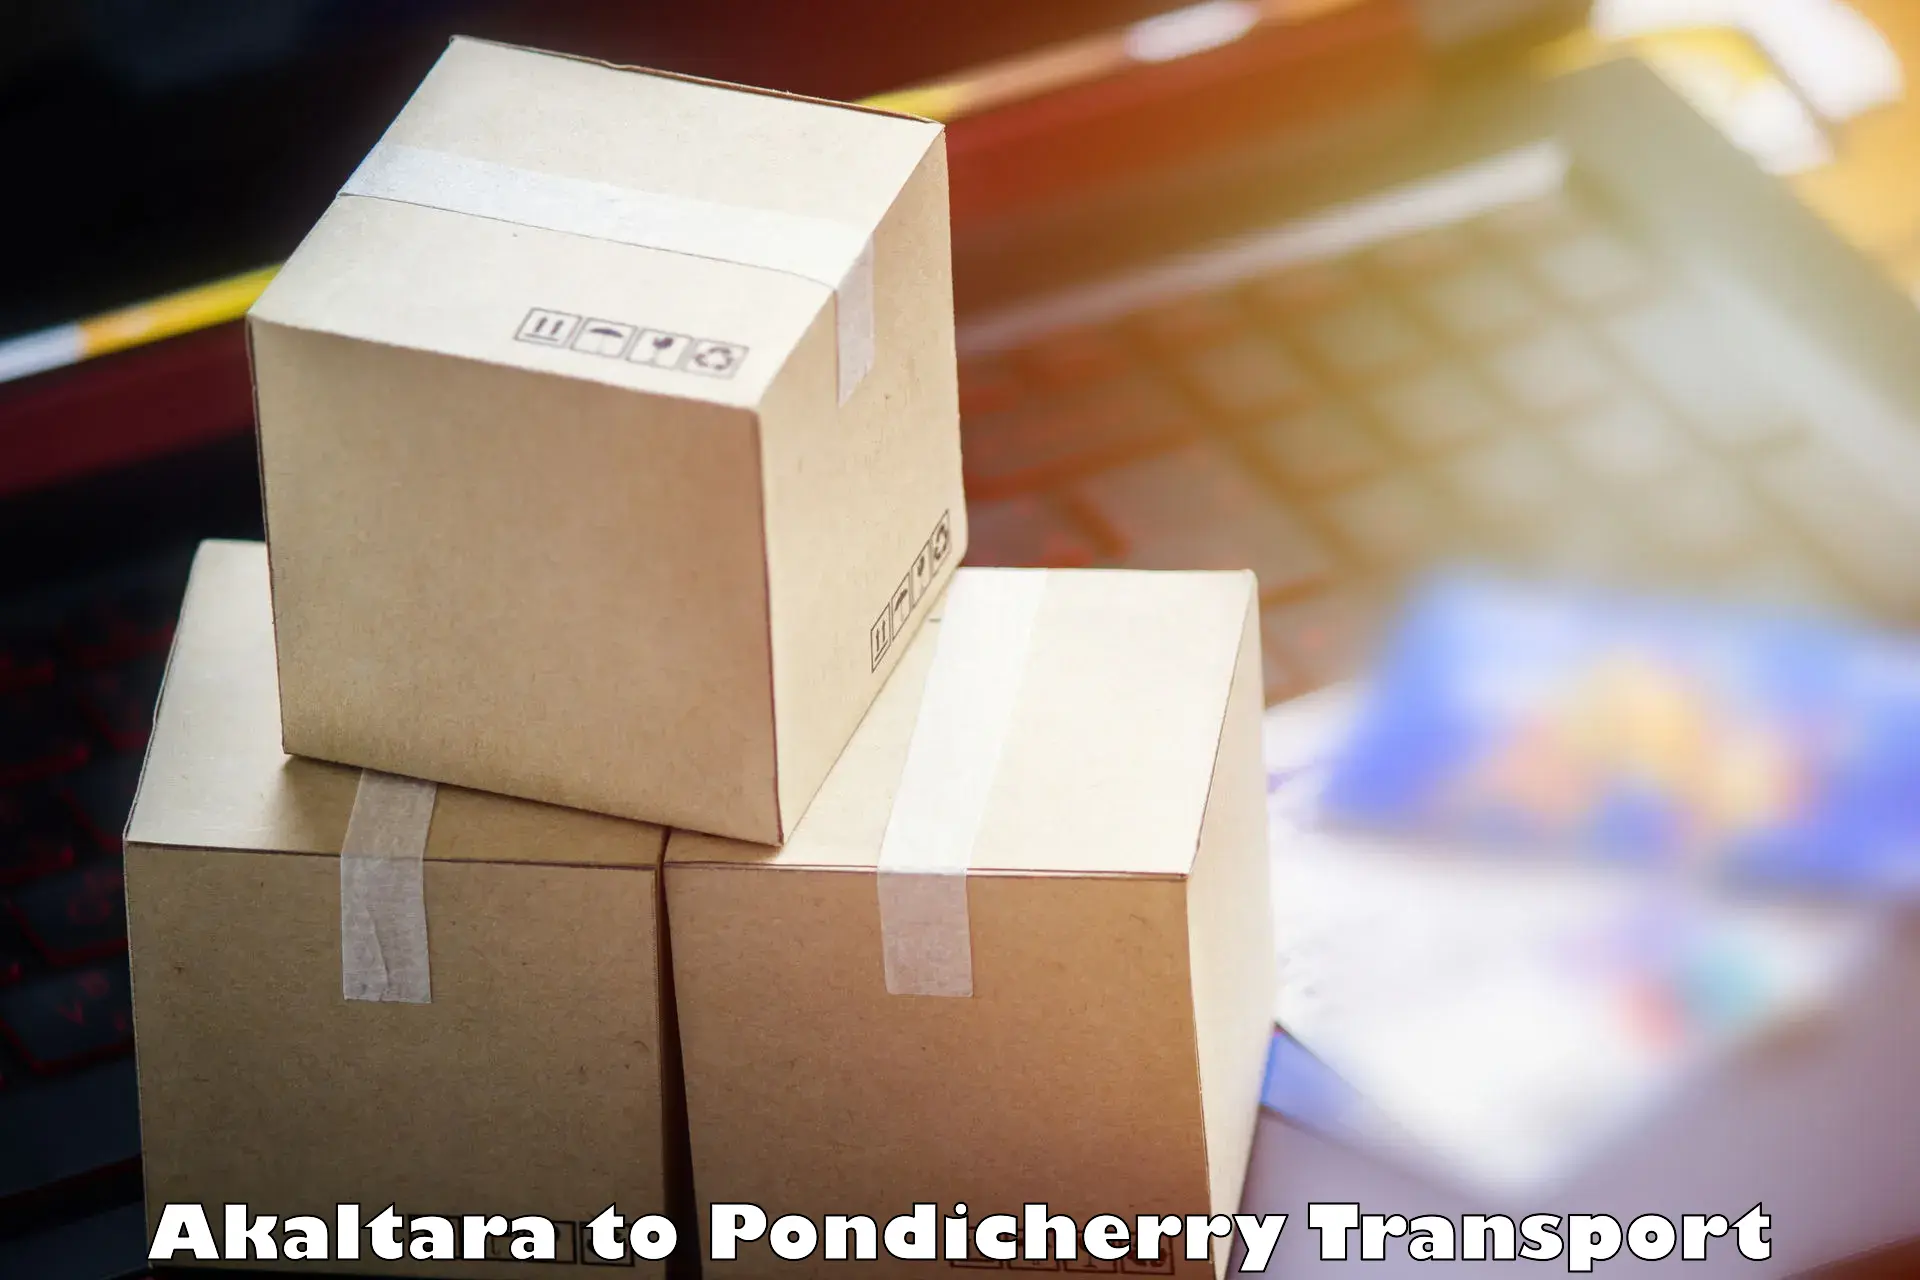 Delivery service Akaltara to Pondicherry University